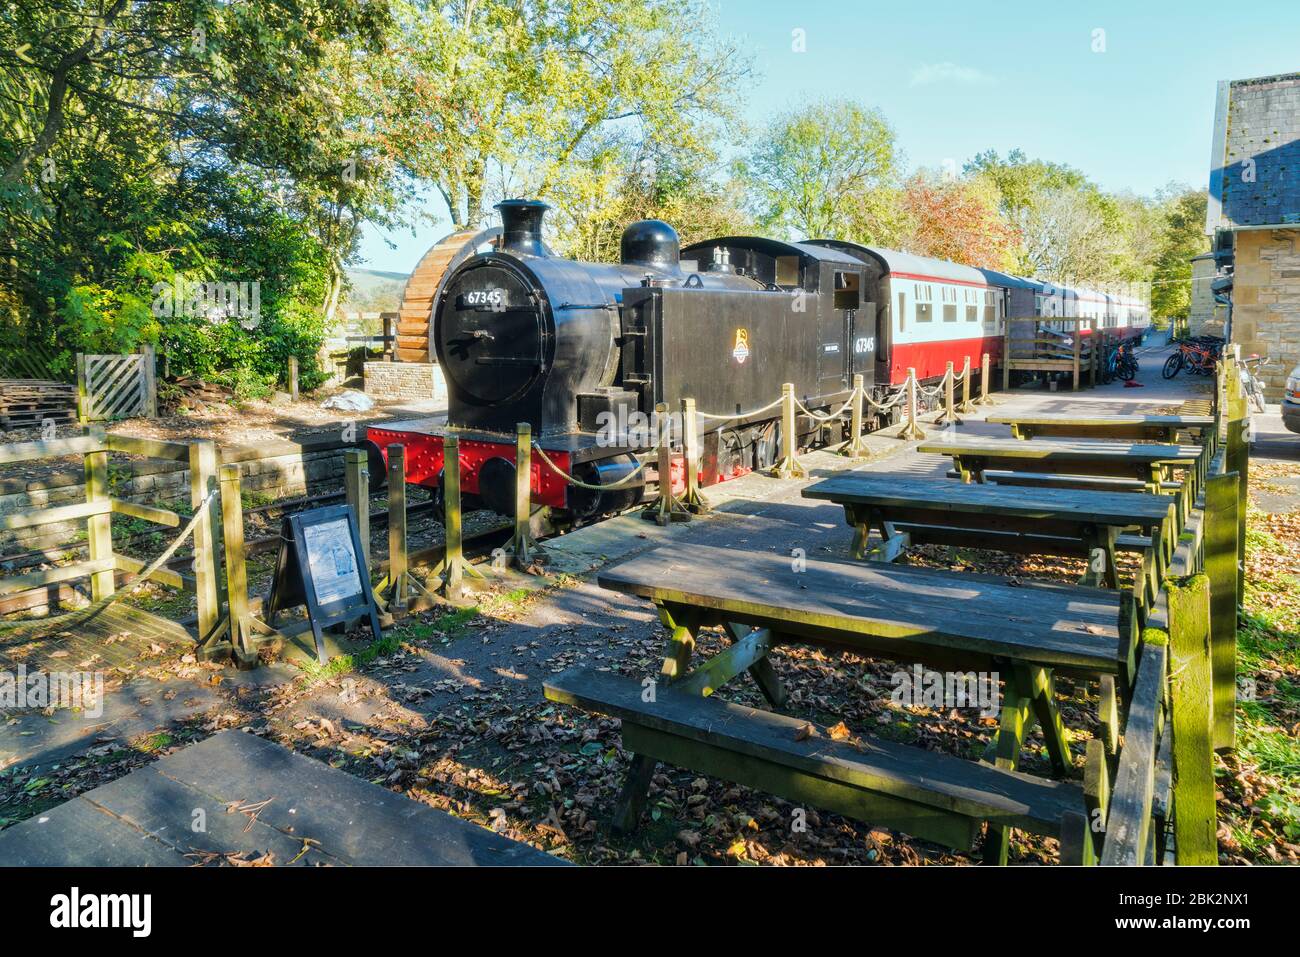 Wensleydale heritage railway station and engine, Hawes village, Yorkshire, England, UK Stock Photo